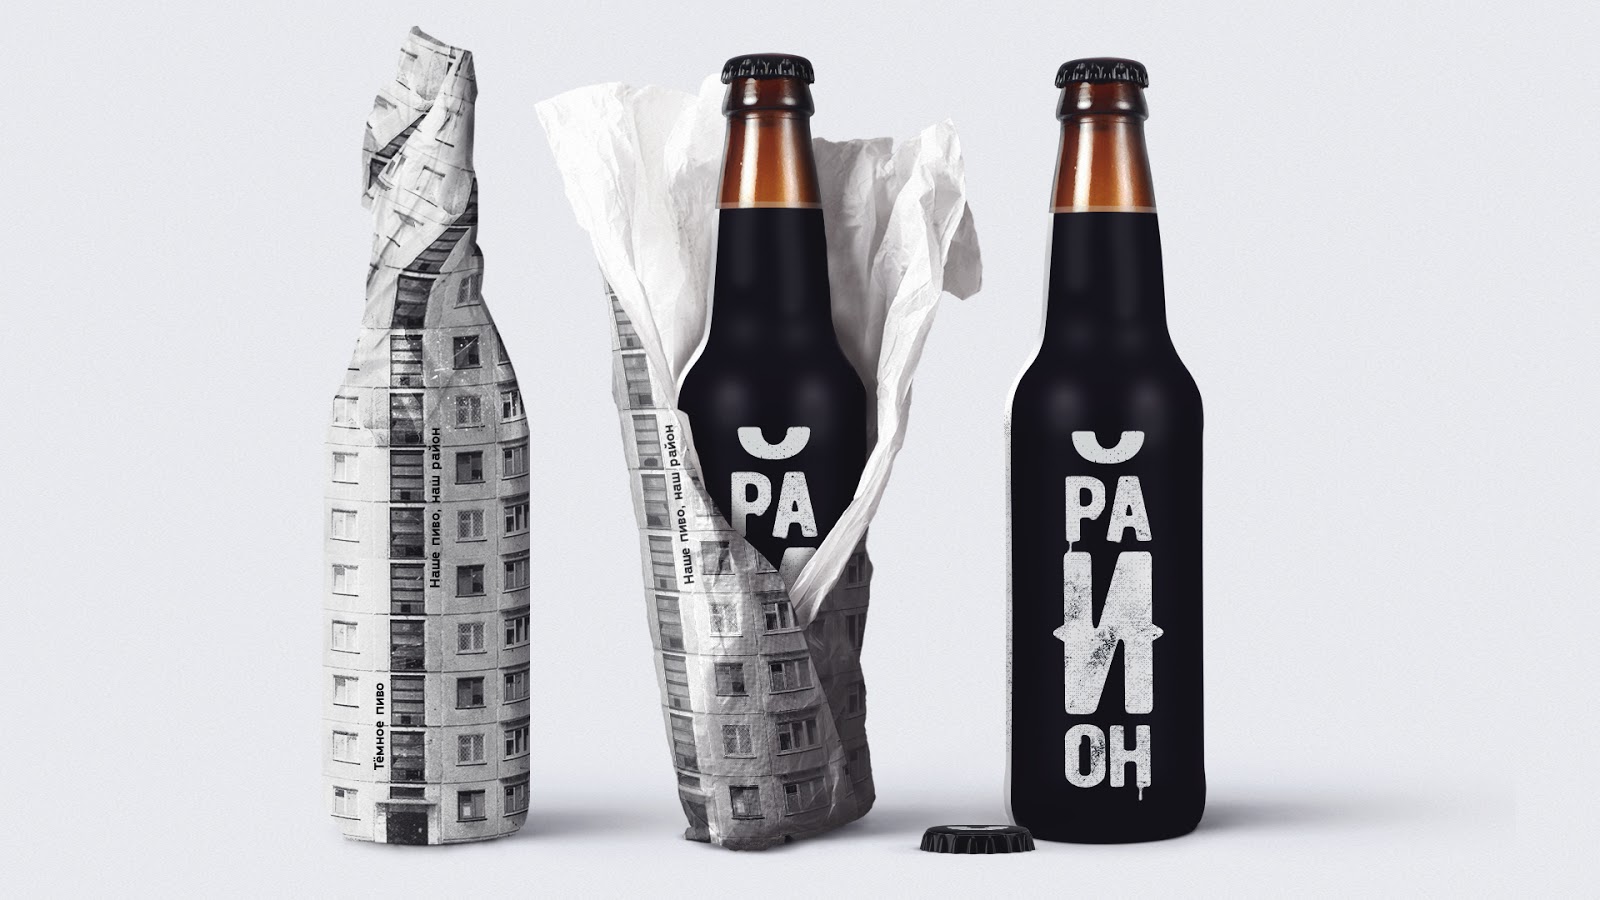 啤酒饮料西安oe欧亿体育app官方下载
品牌策划包装设计